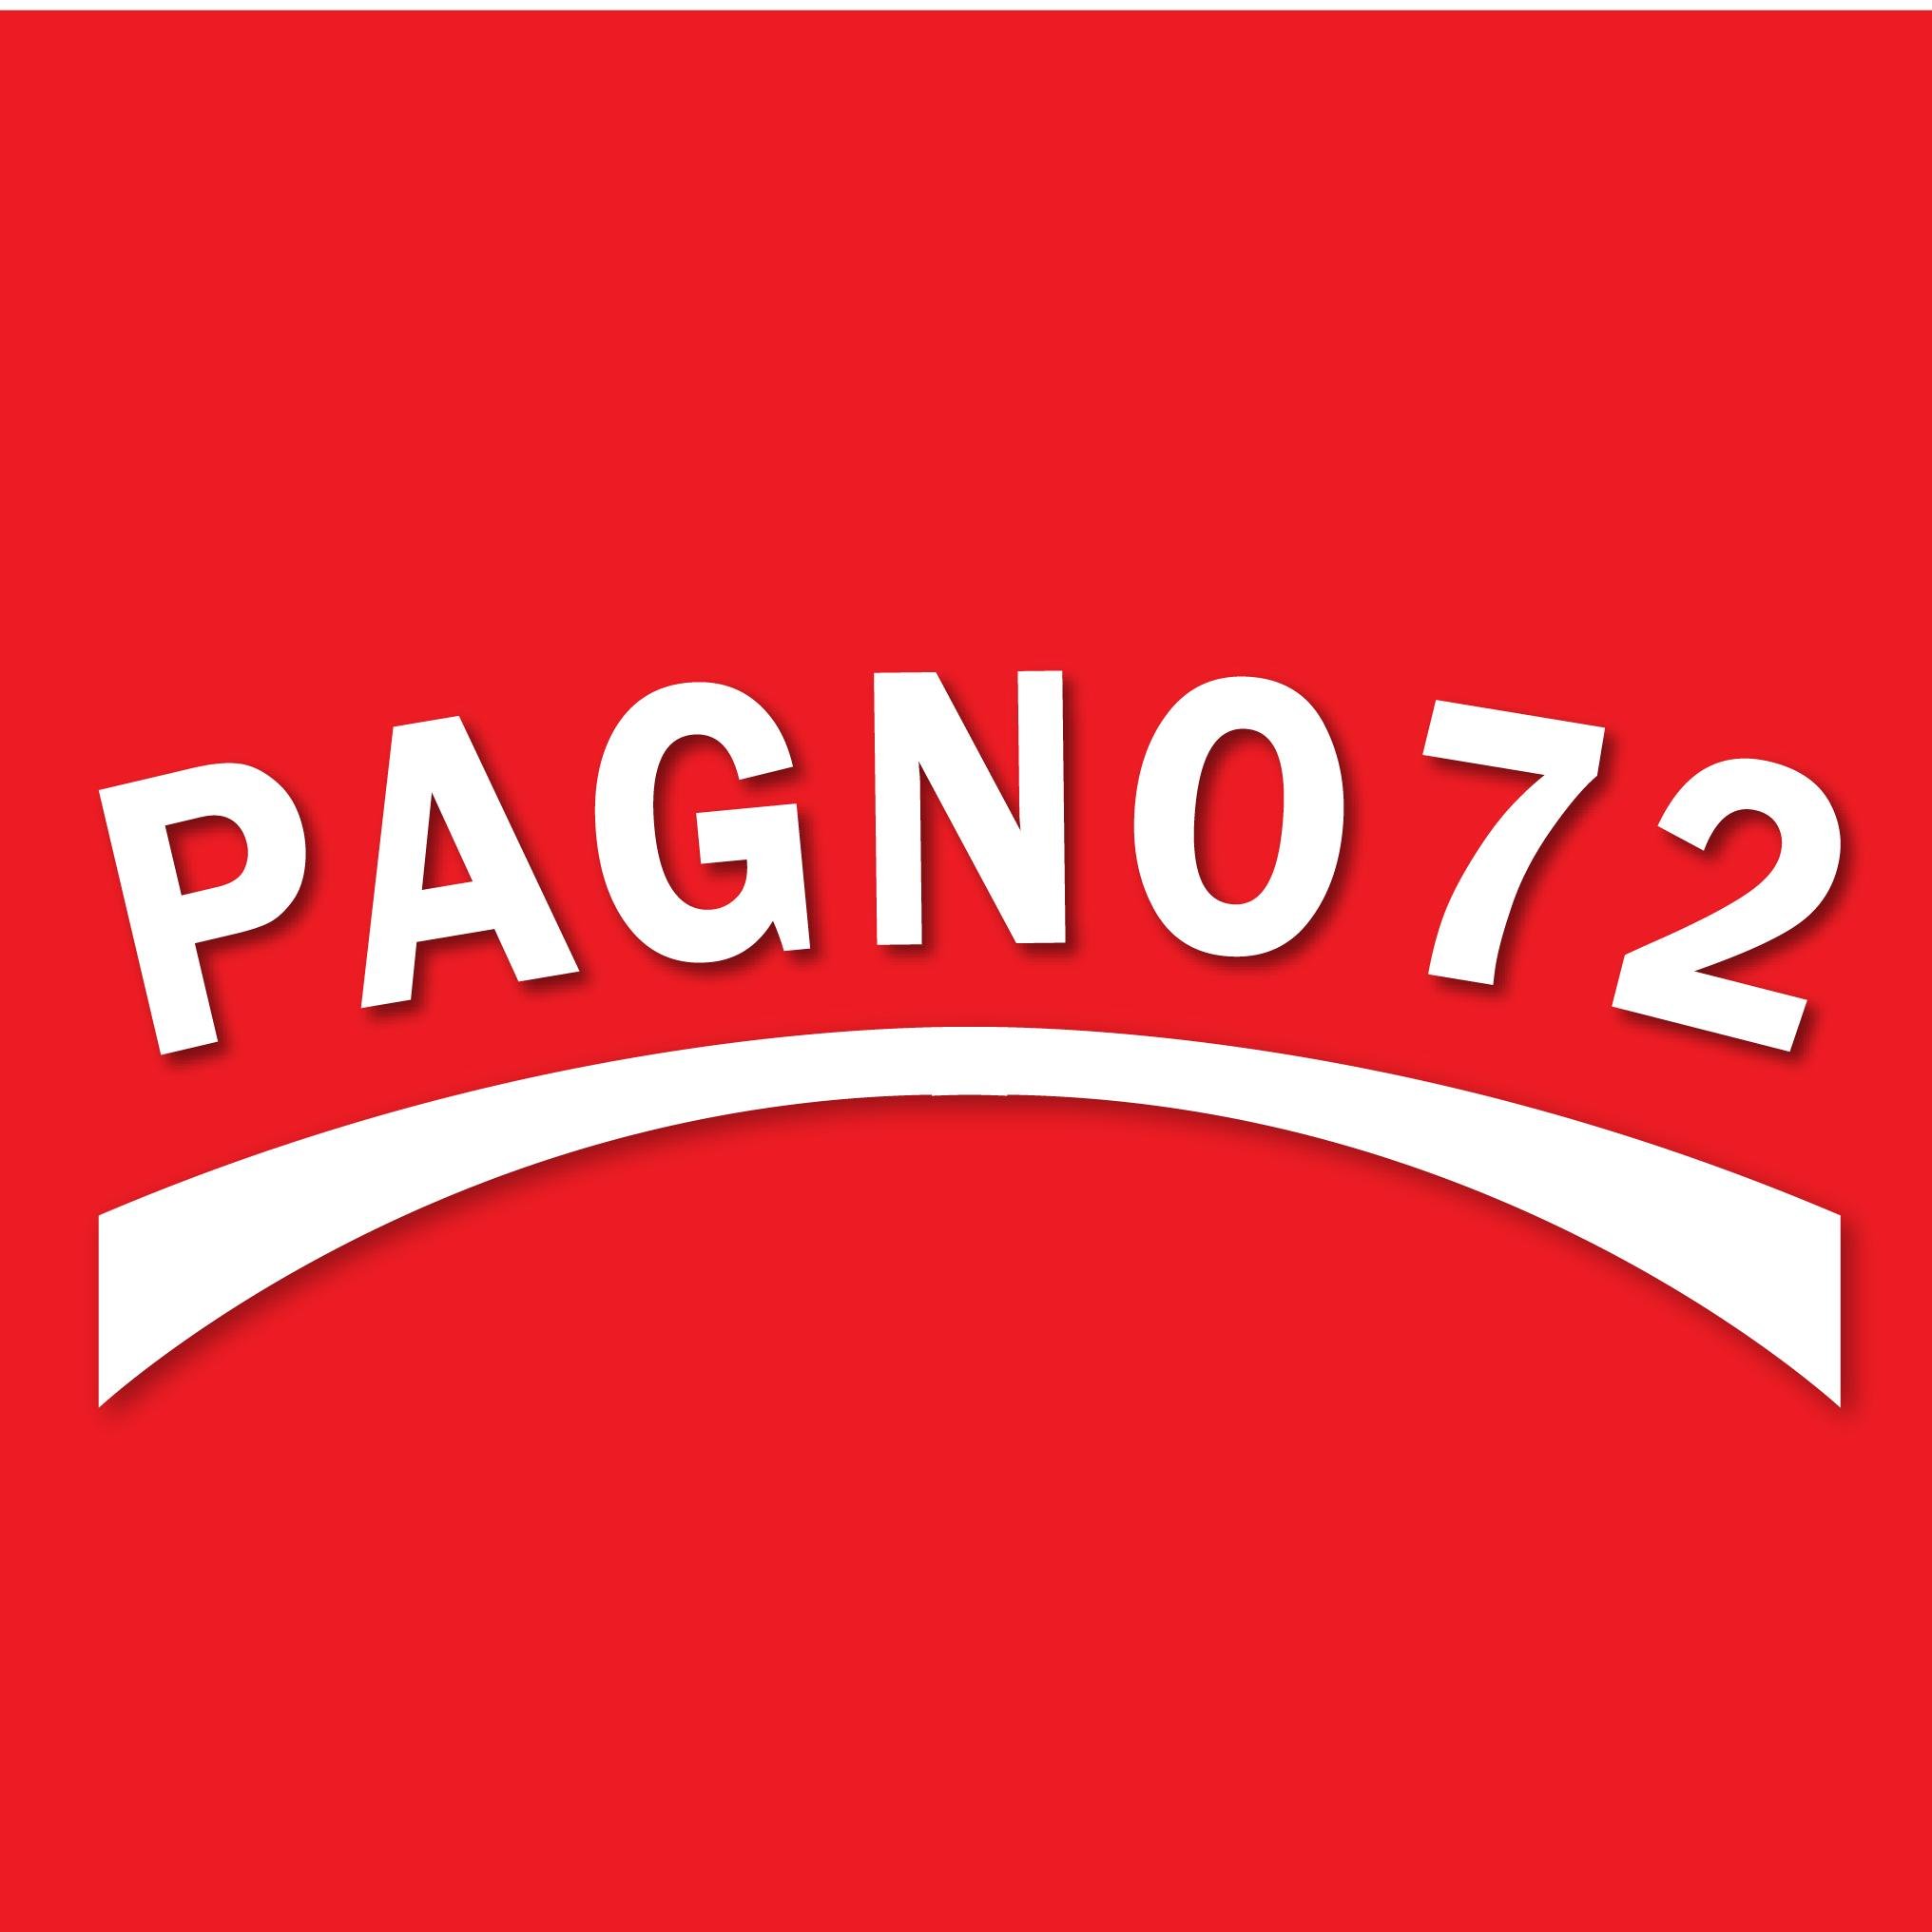 Pagno72 Profile Picture